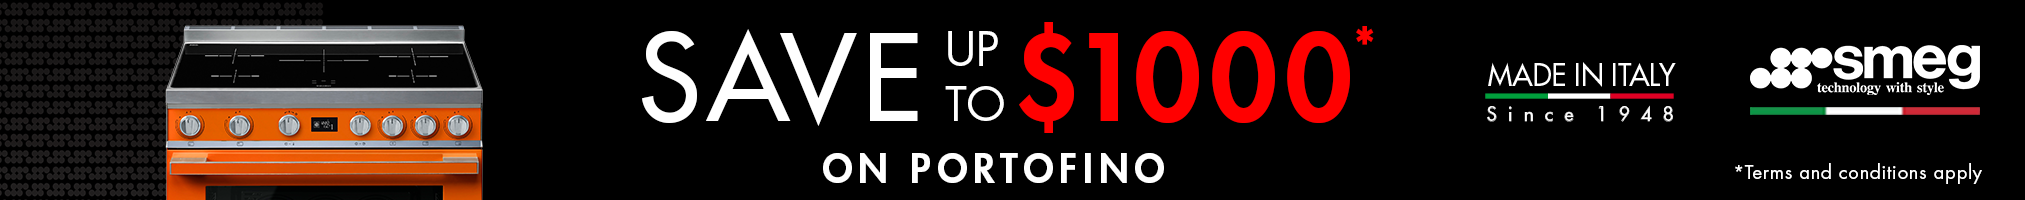 Save up to $1000 on Smeg Portofino Range